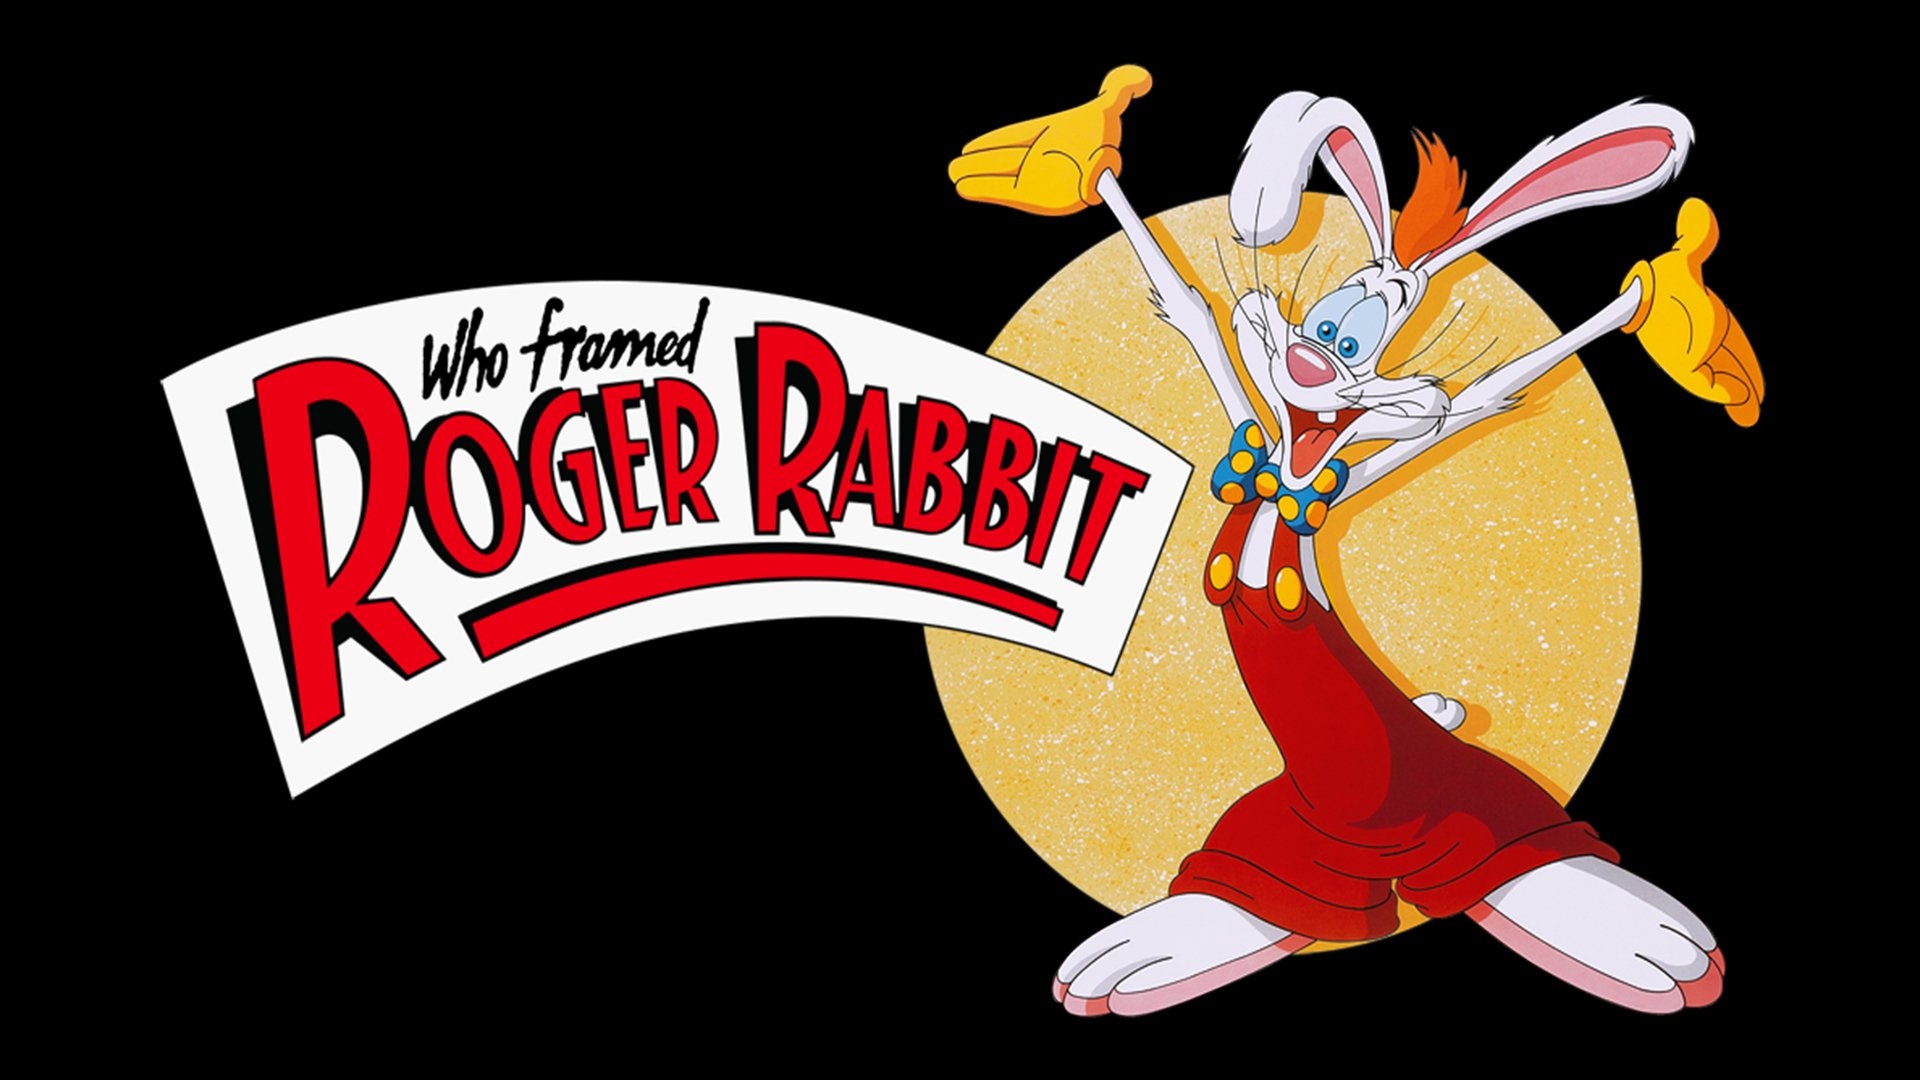 Roger Rabbit Animation, Wallpaper, Fantasy, Animated, 1920x1080 Full HD Desktop